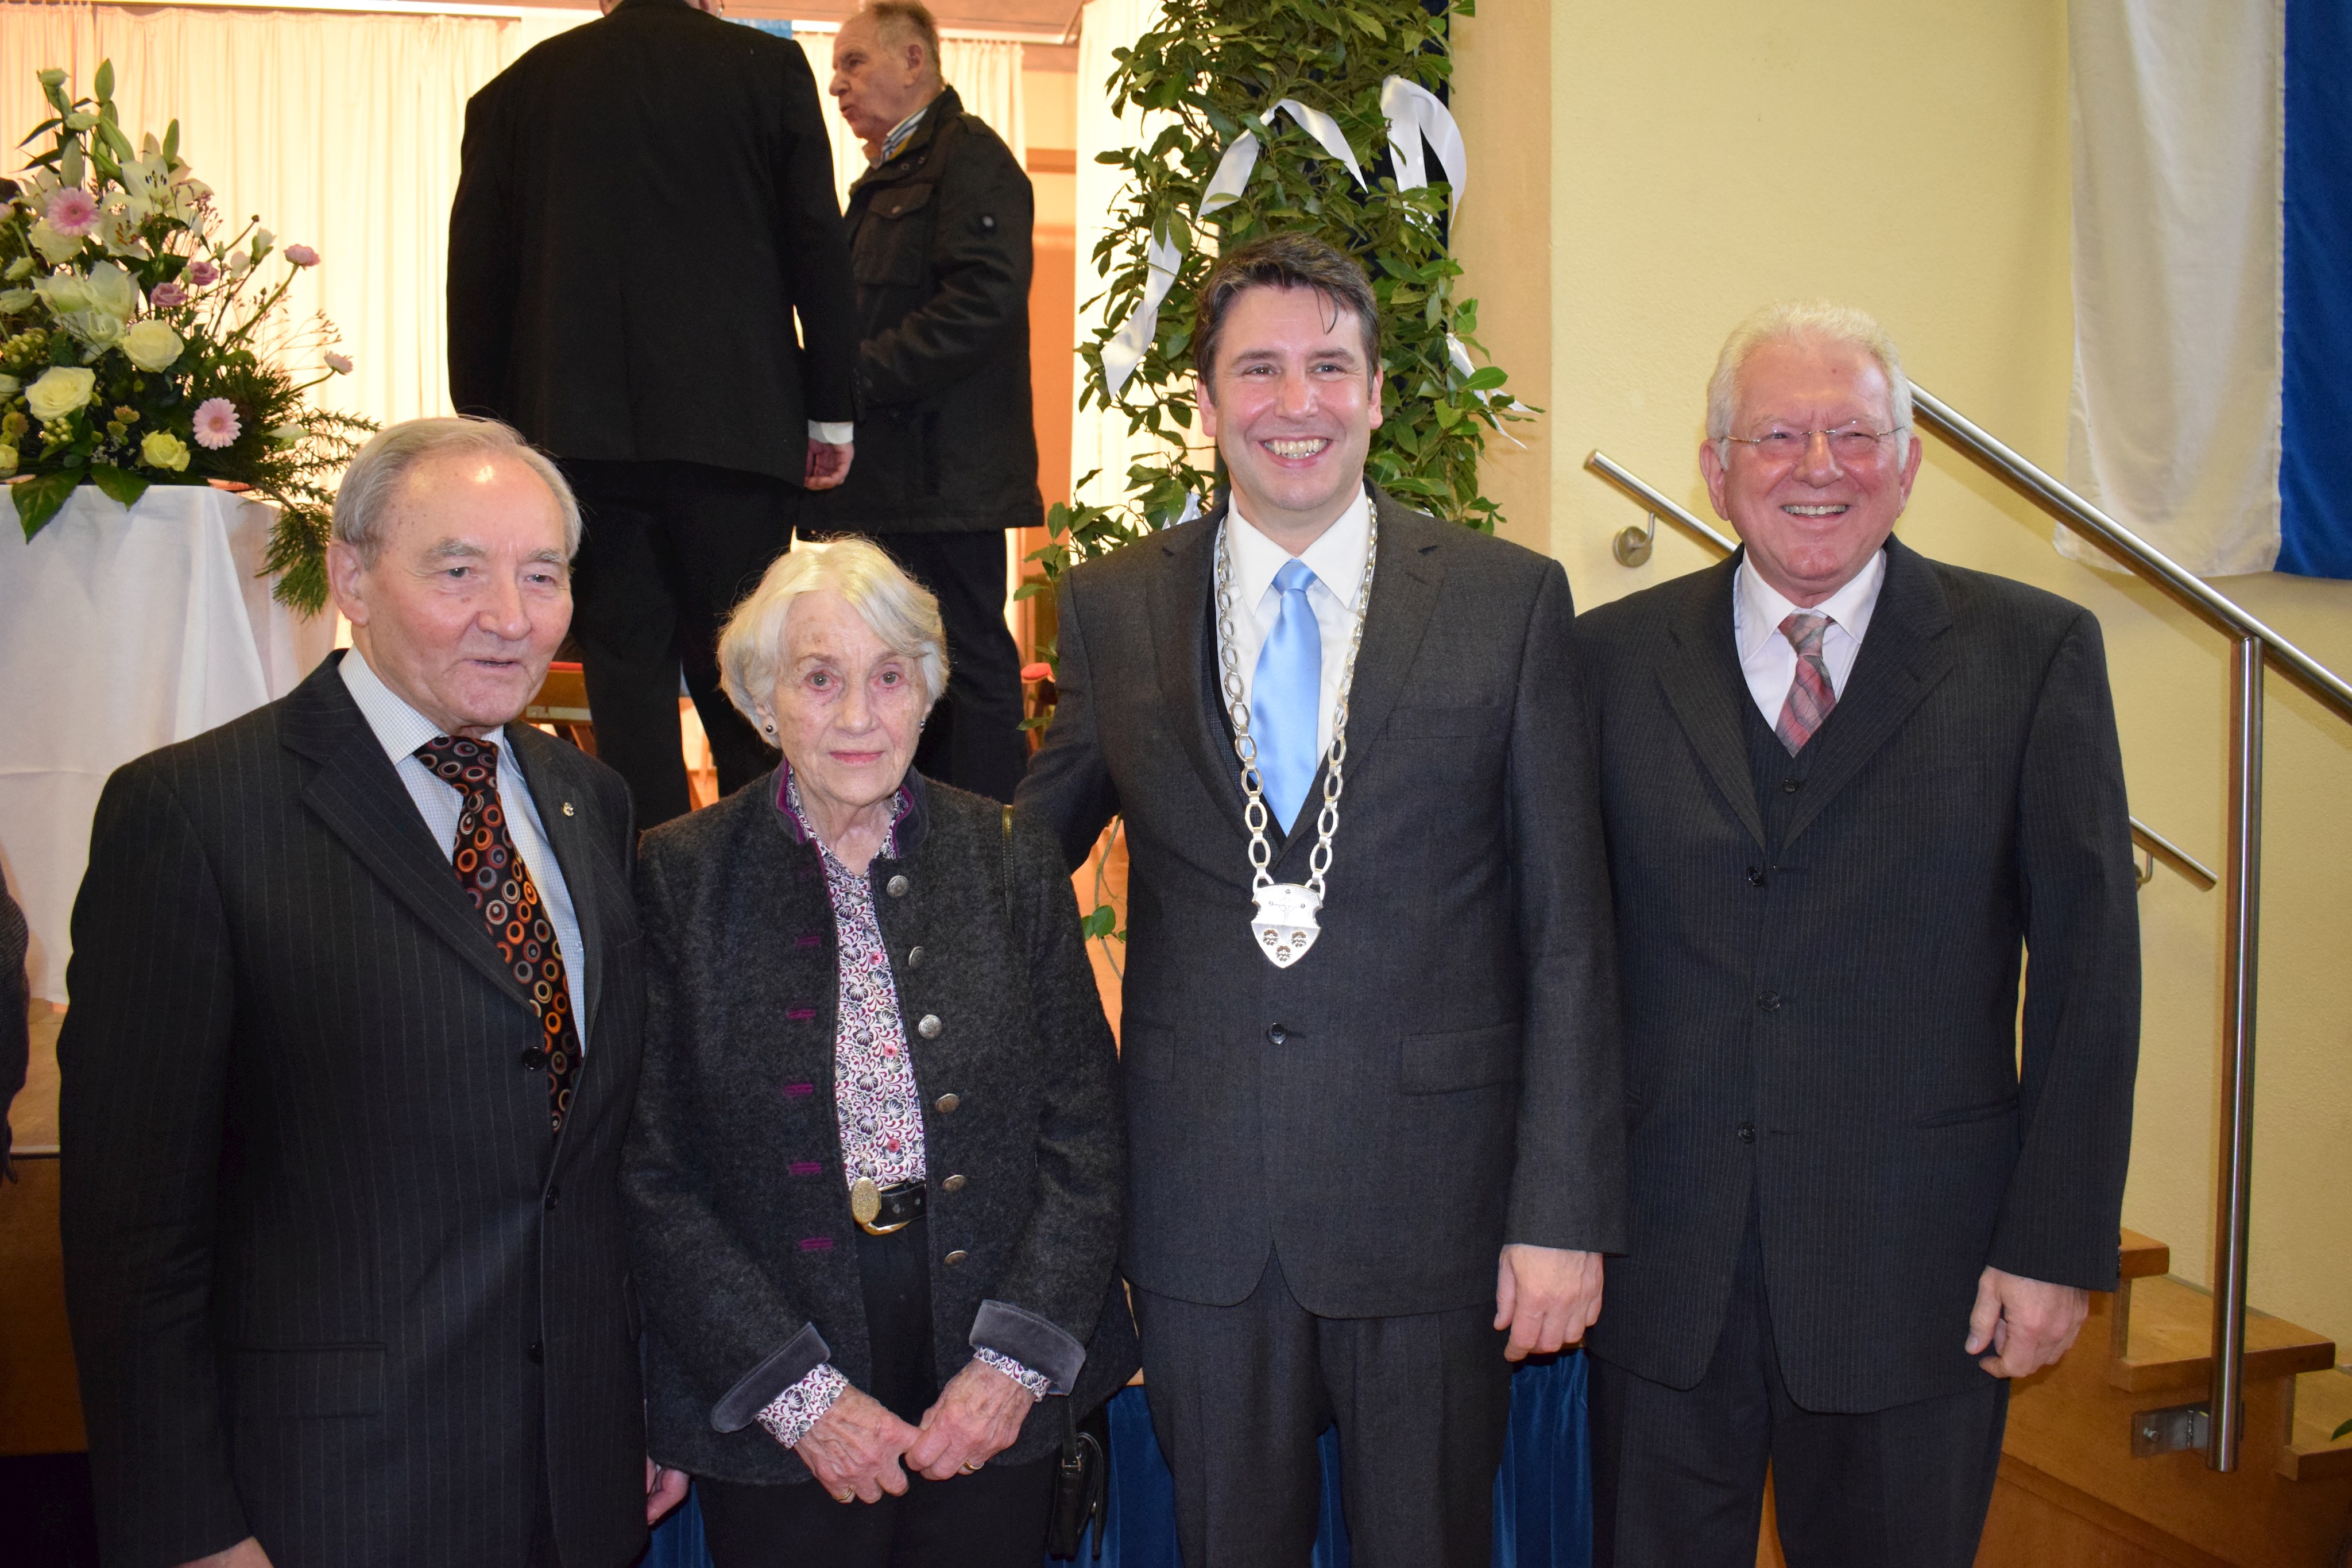 Bürgermeister Klaus Thoma (mit Amtskette) mit seinen Vorgängern. Von links: Dr. Gerald Amarell, Christa Schoenberg und Horst Fuhrmann.